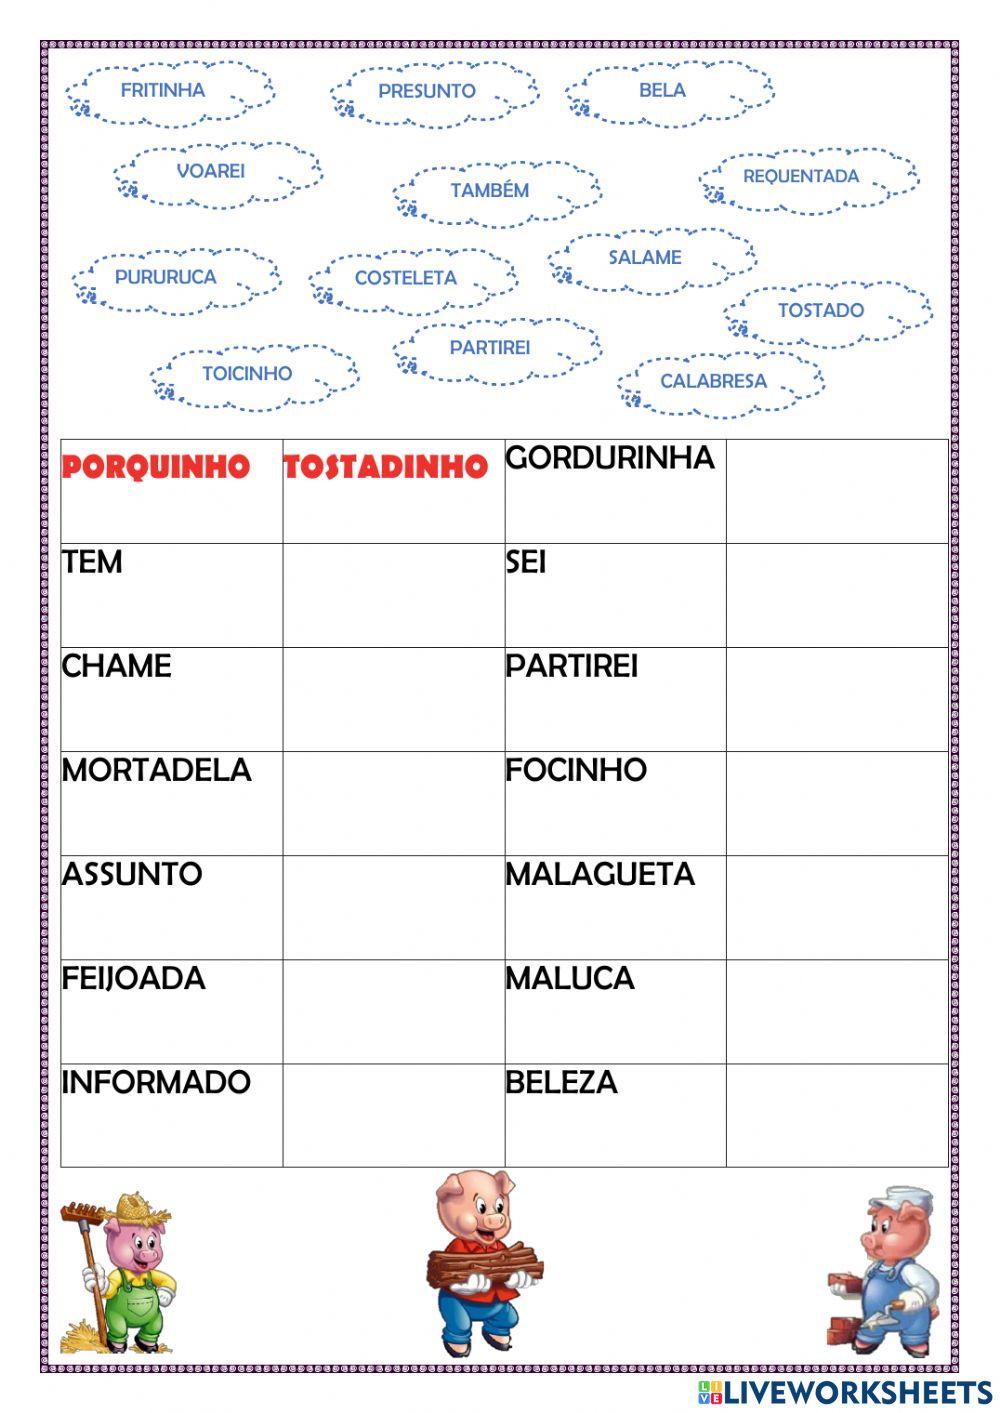 Atividade lingua portuguesa 3 ano - Recursos de ensino